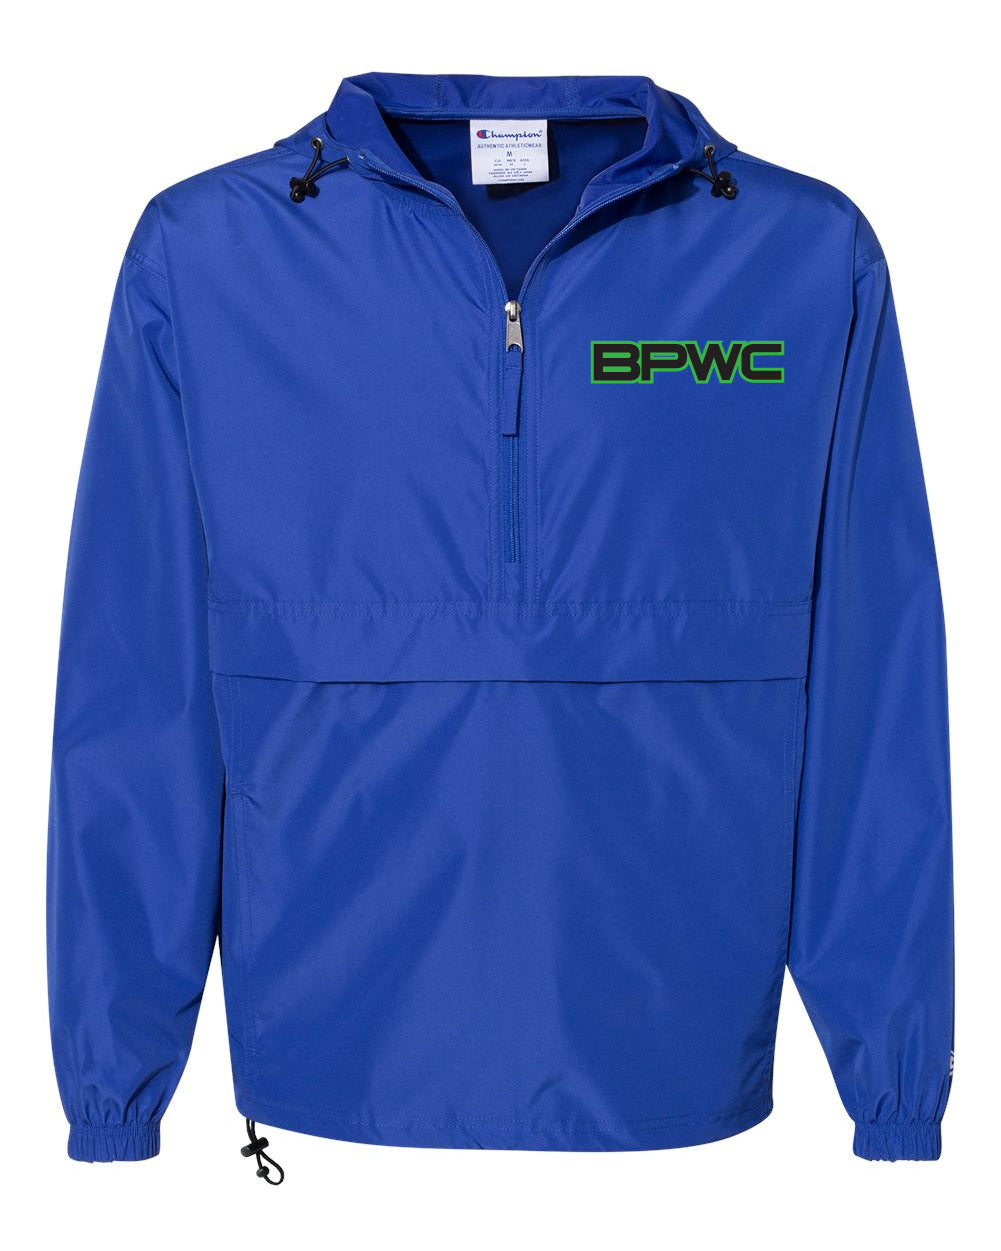 BPWC 1/4 Zip Jacket